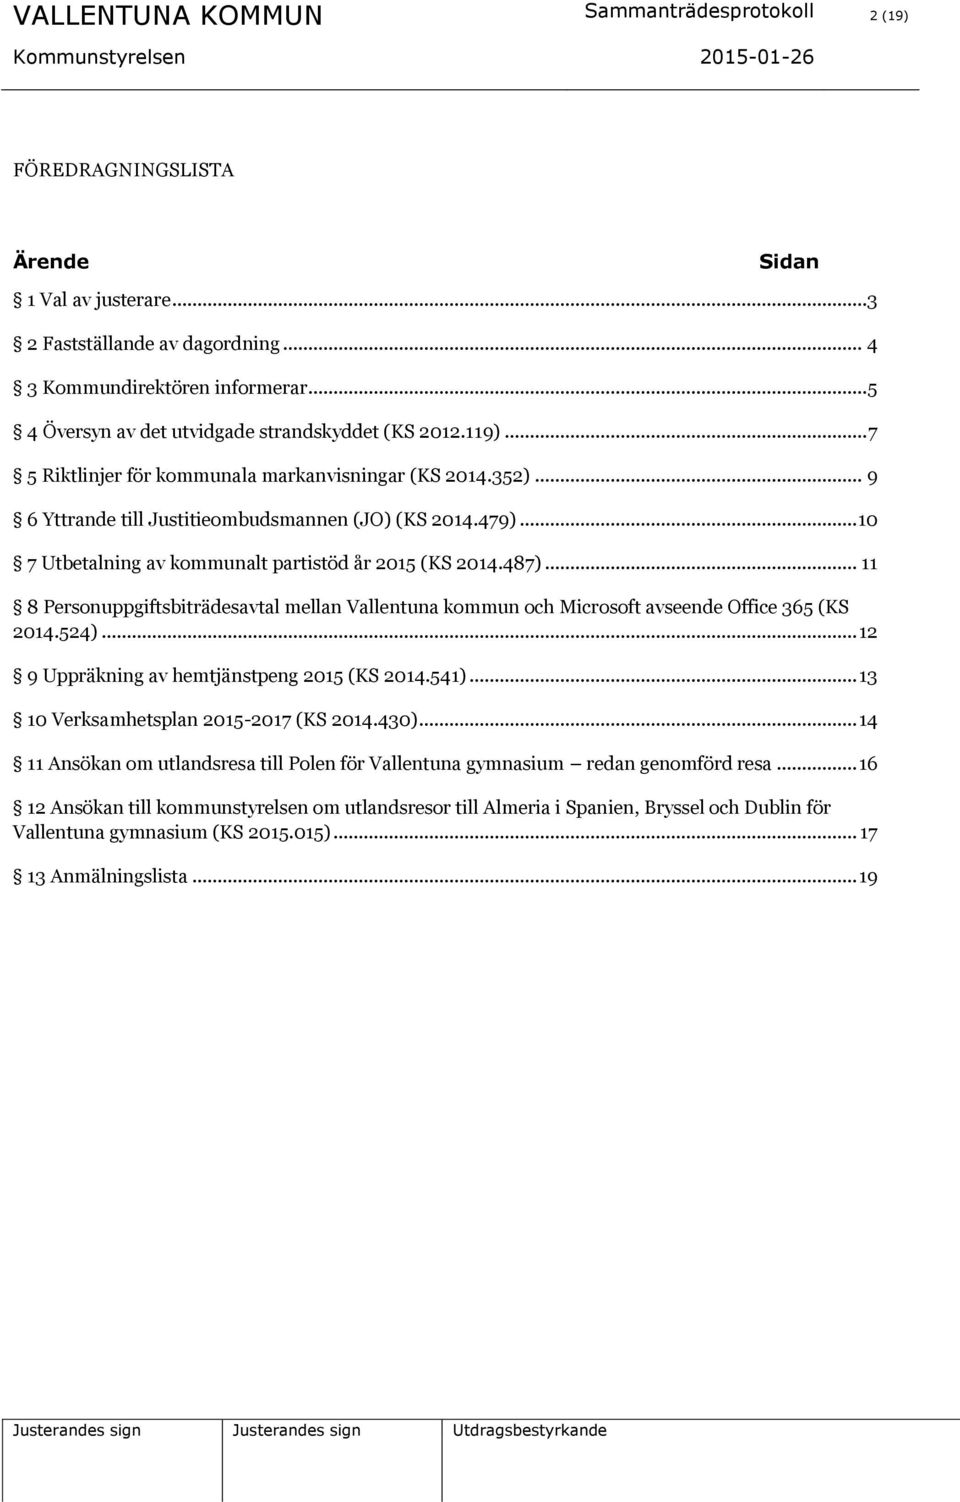 .. 10 7 Utbetalning av kommunalt partistöd år 2015 (KS 2014.487)... 11 8 Personuppgiftsbiträdesavtal mellan Vallentuna kommun och Microsoft avseende Office 365 (KS 2014.524).